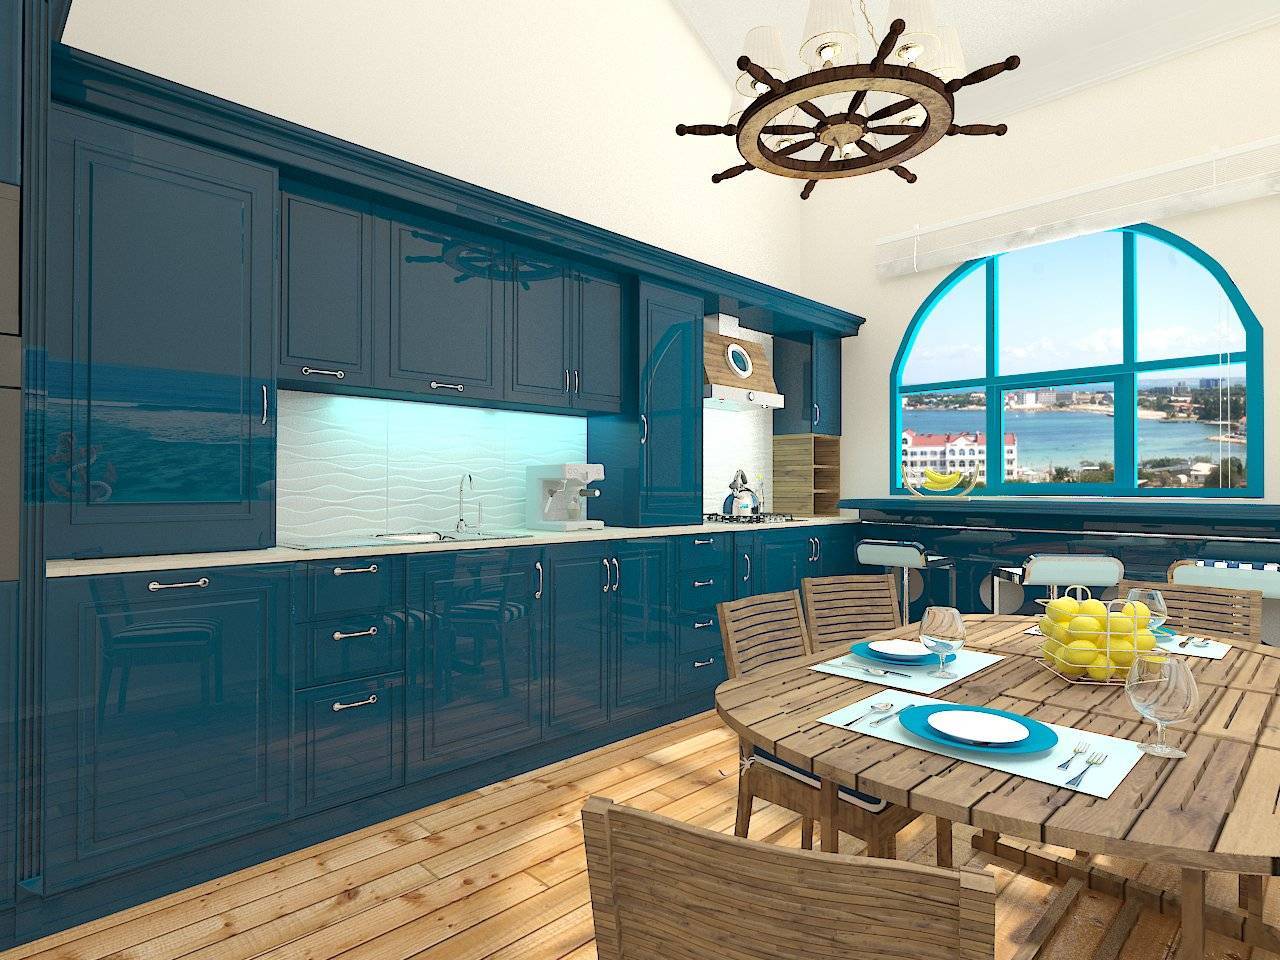 Кухня в морском стиле: дизайн кухни-гостинной своими руками, морская тема на яхте, интерьер как на корабле